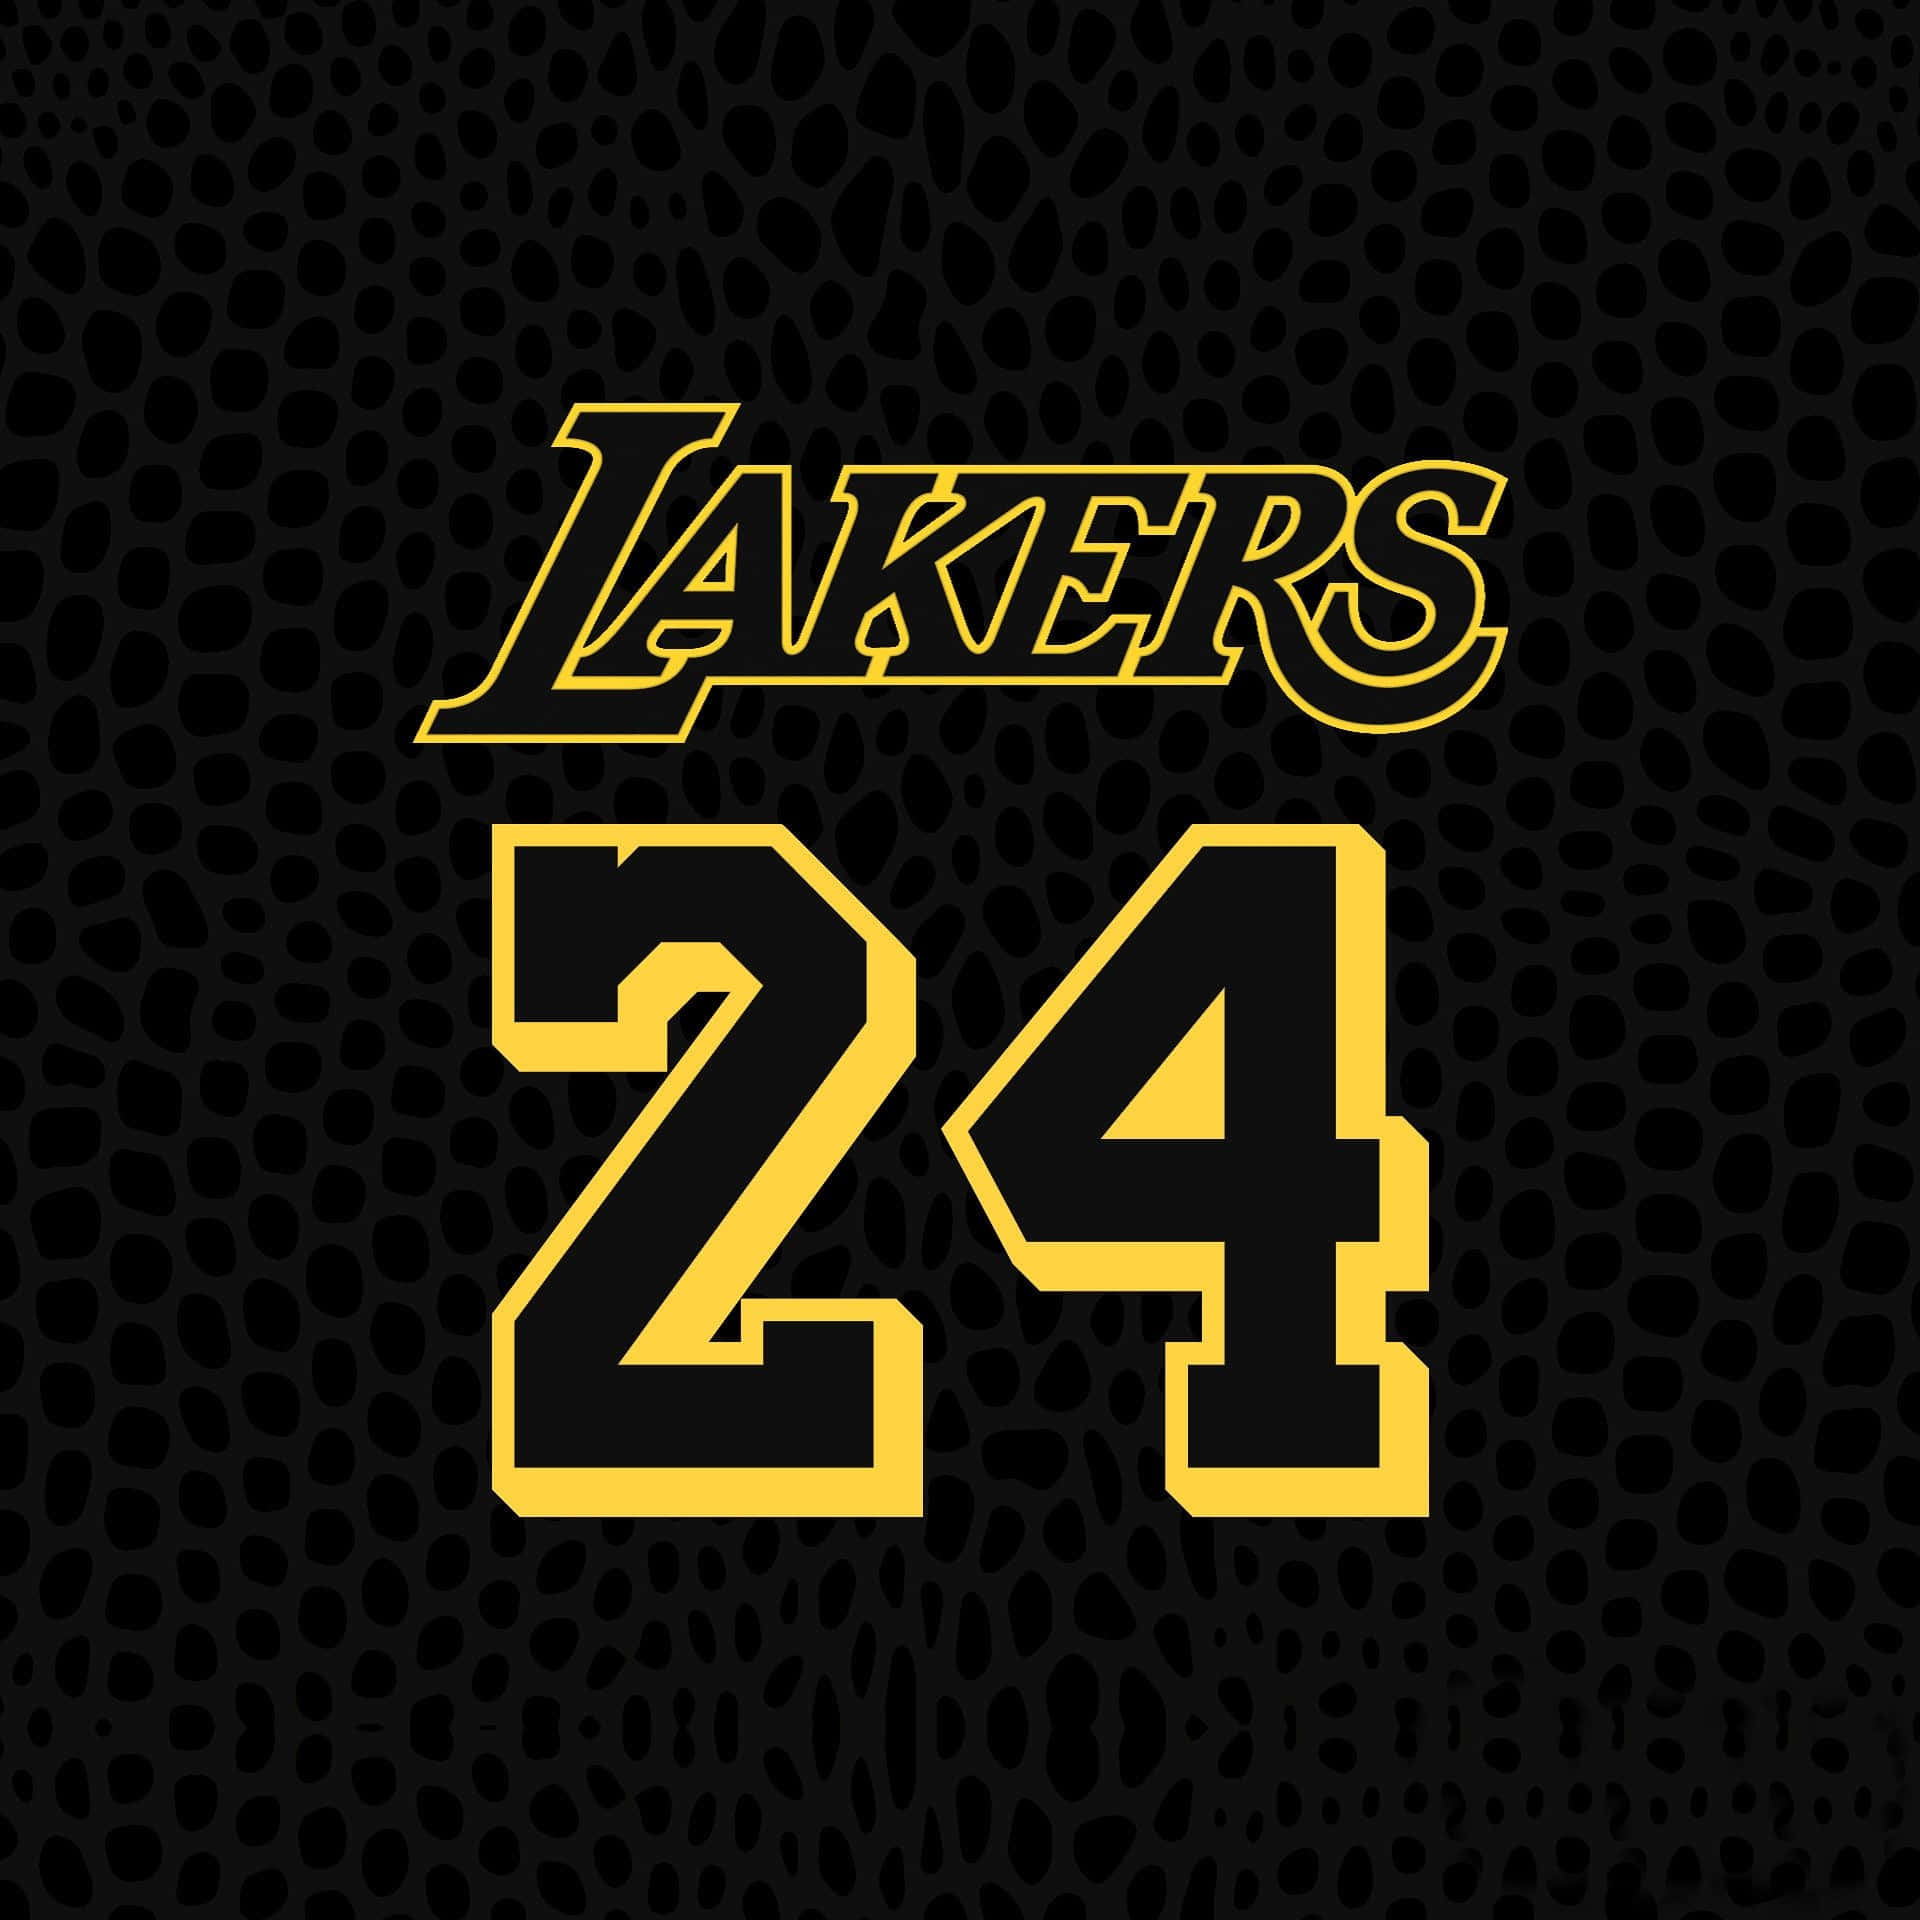 Download Kobe Bryant 24 Logo Jersey Back View Wallpaper